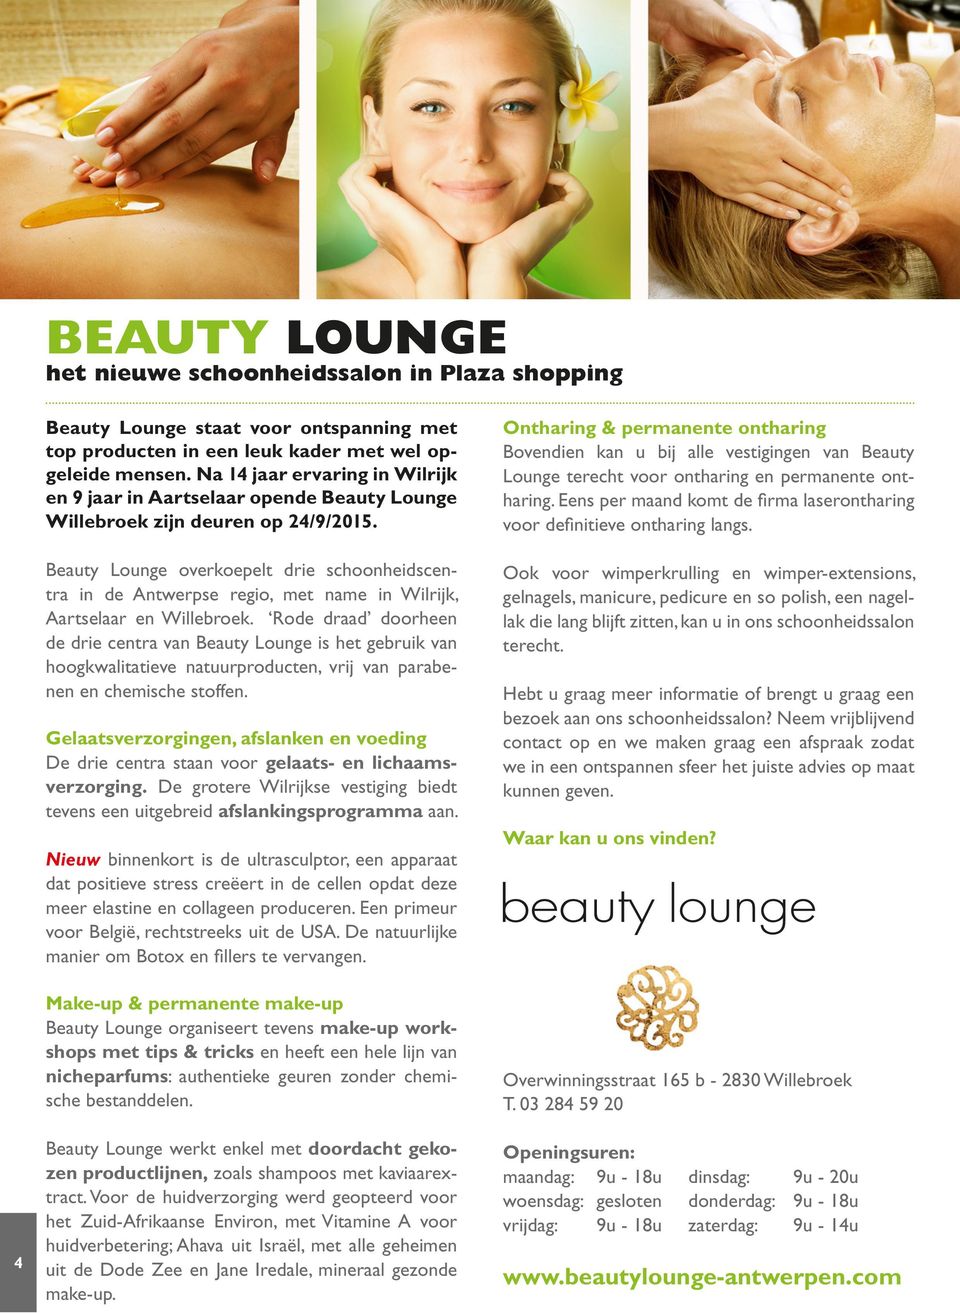 Beauty Lounge overkoepelt drie schoonheidscentra in de Antwerpse regio, met name in Wilrijk, Aartselaar en Willebroek.